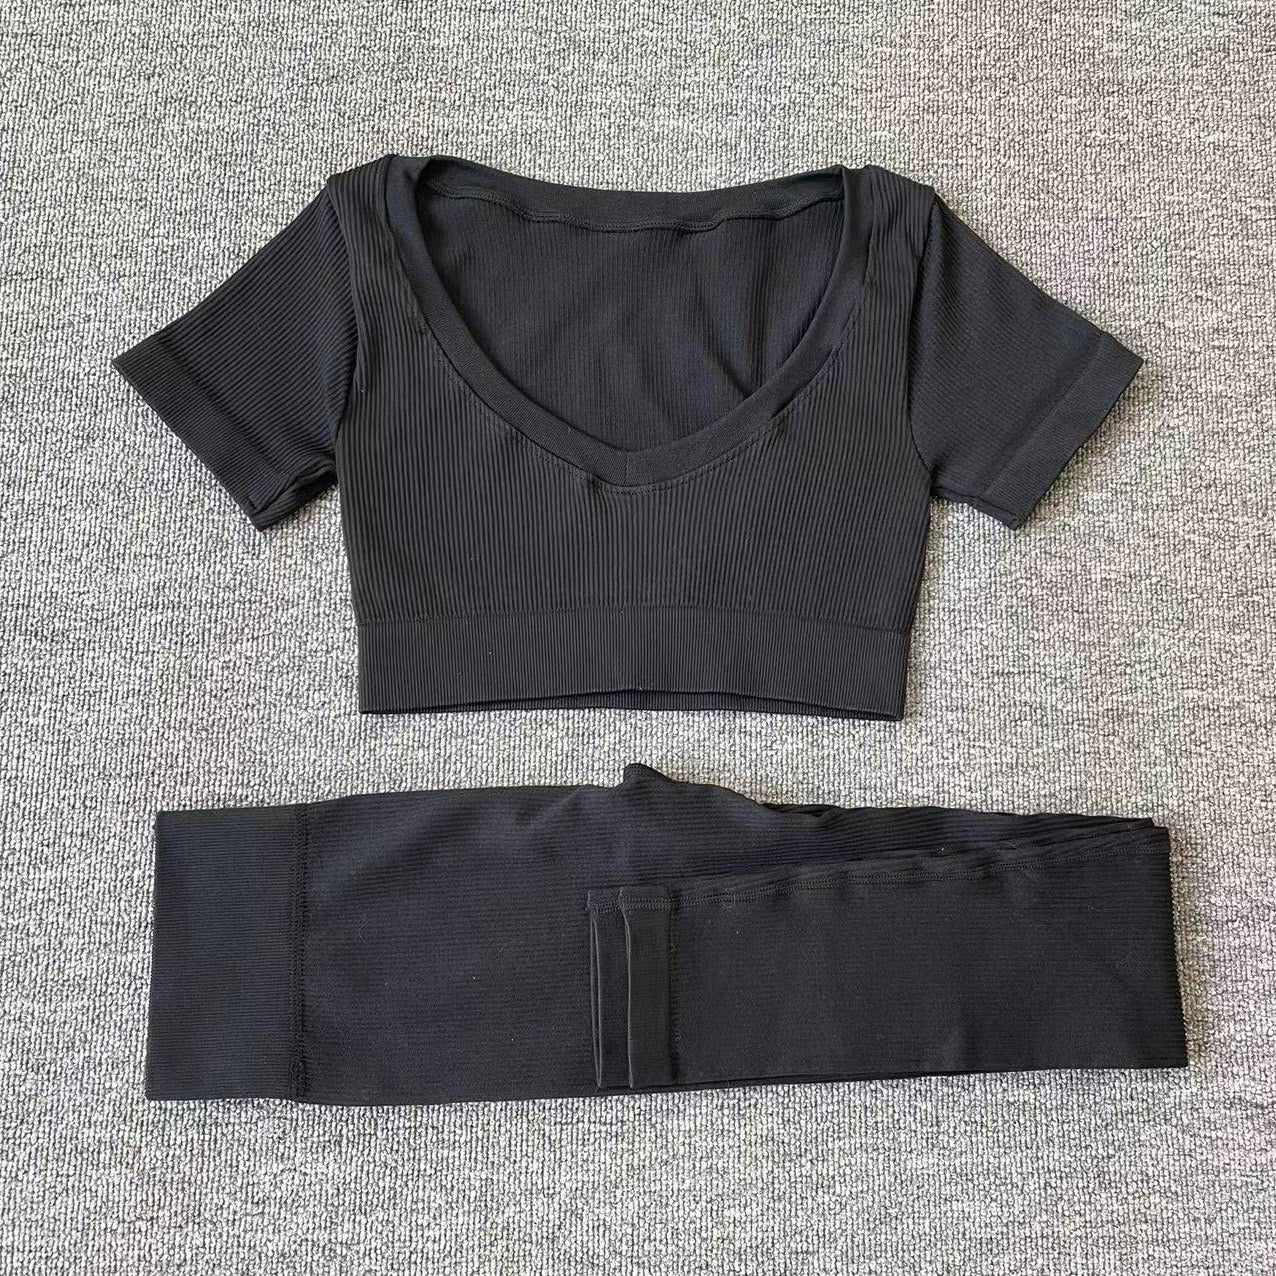 Two Piece Yoga Long Sleeve Tracksuit TshirtPants Black 1